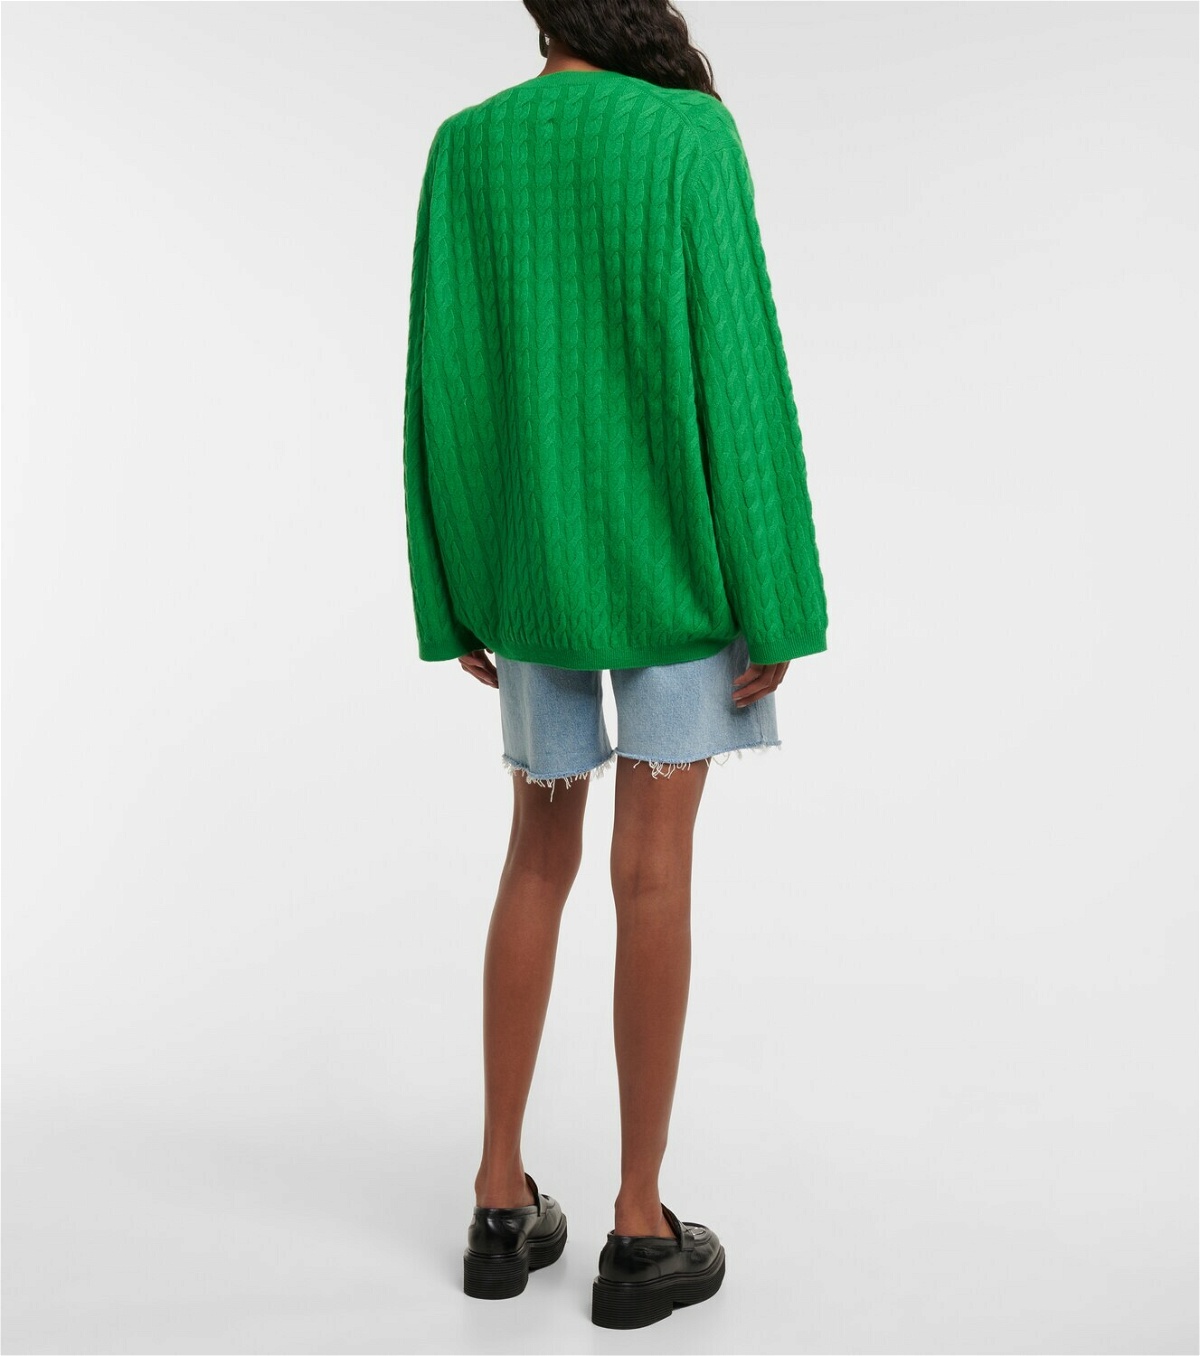 Jardin des Orangers Cable-knit cashmere sweater